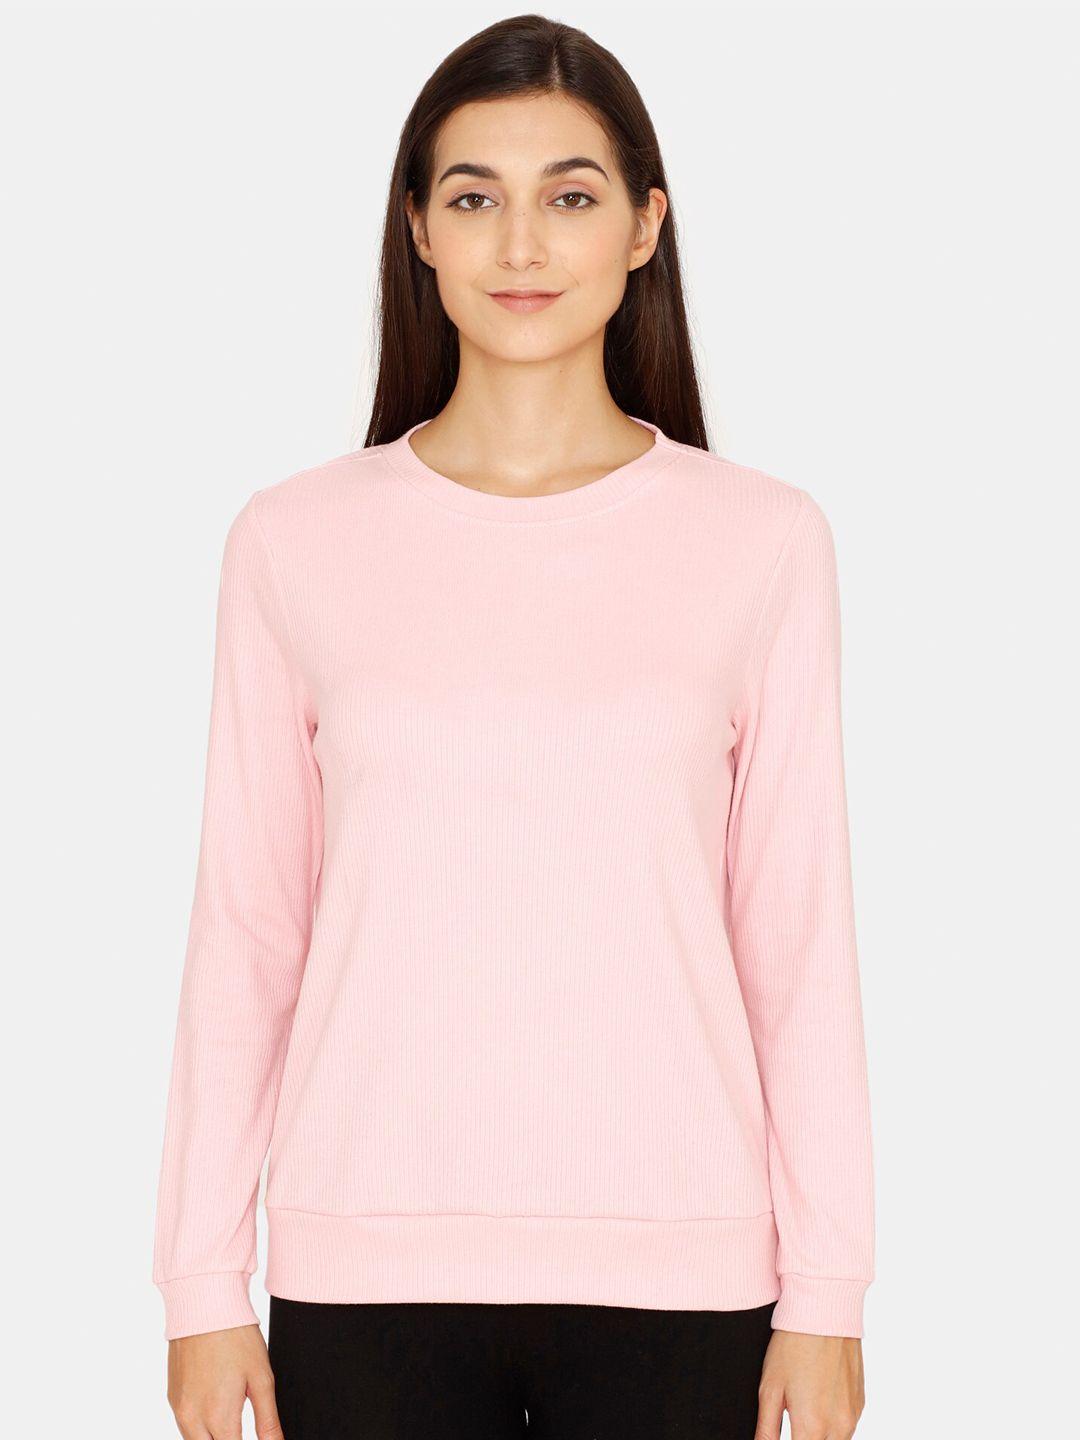 zivame-women-pink-solid-round-neck-sweatshirt